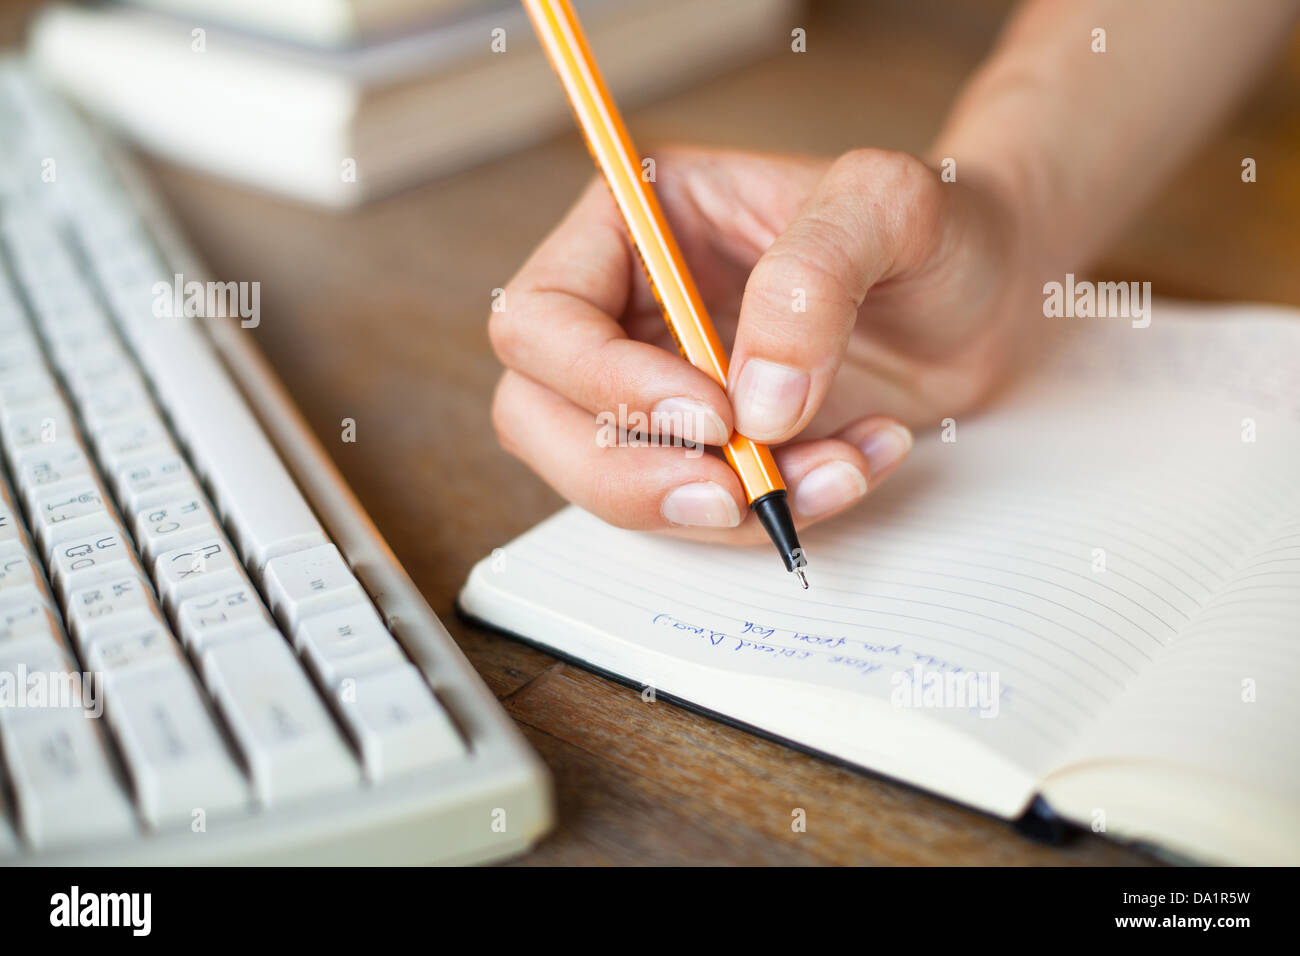 Mani scrive una penna in un notebook, la tastiera del computer in background Foto Stock